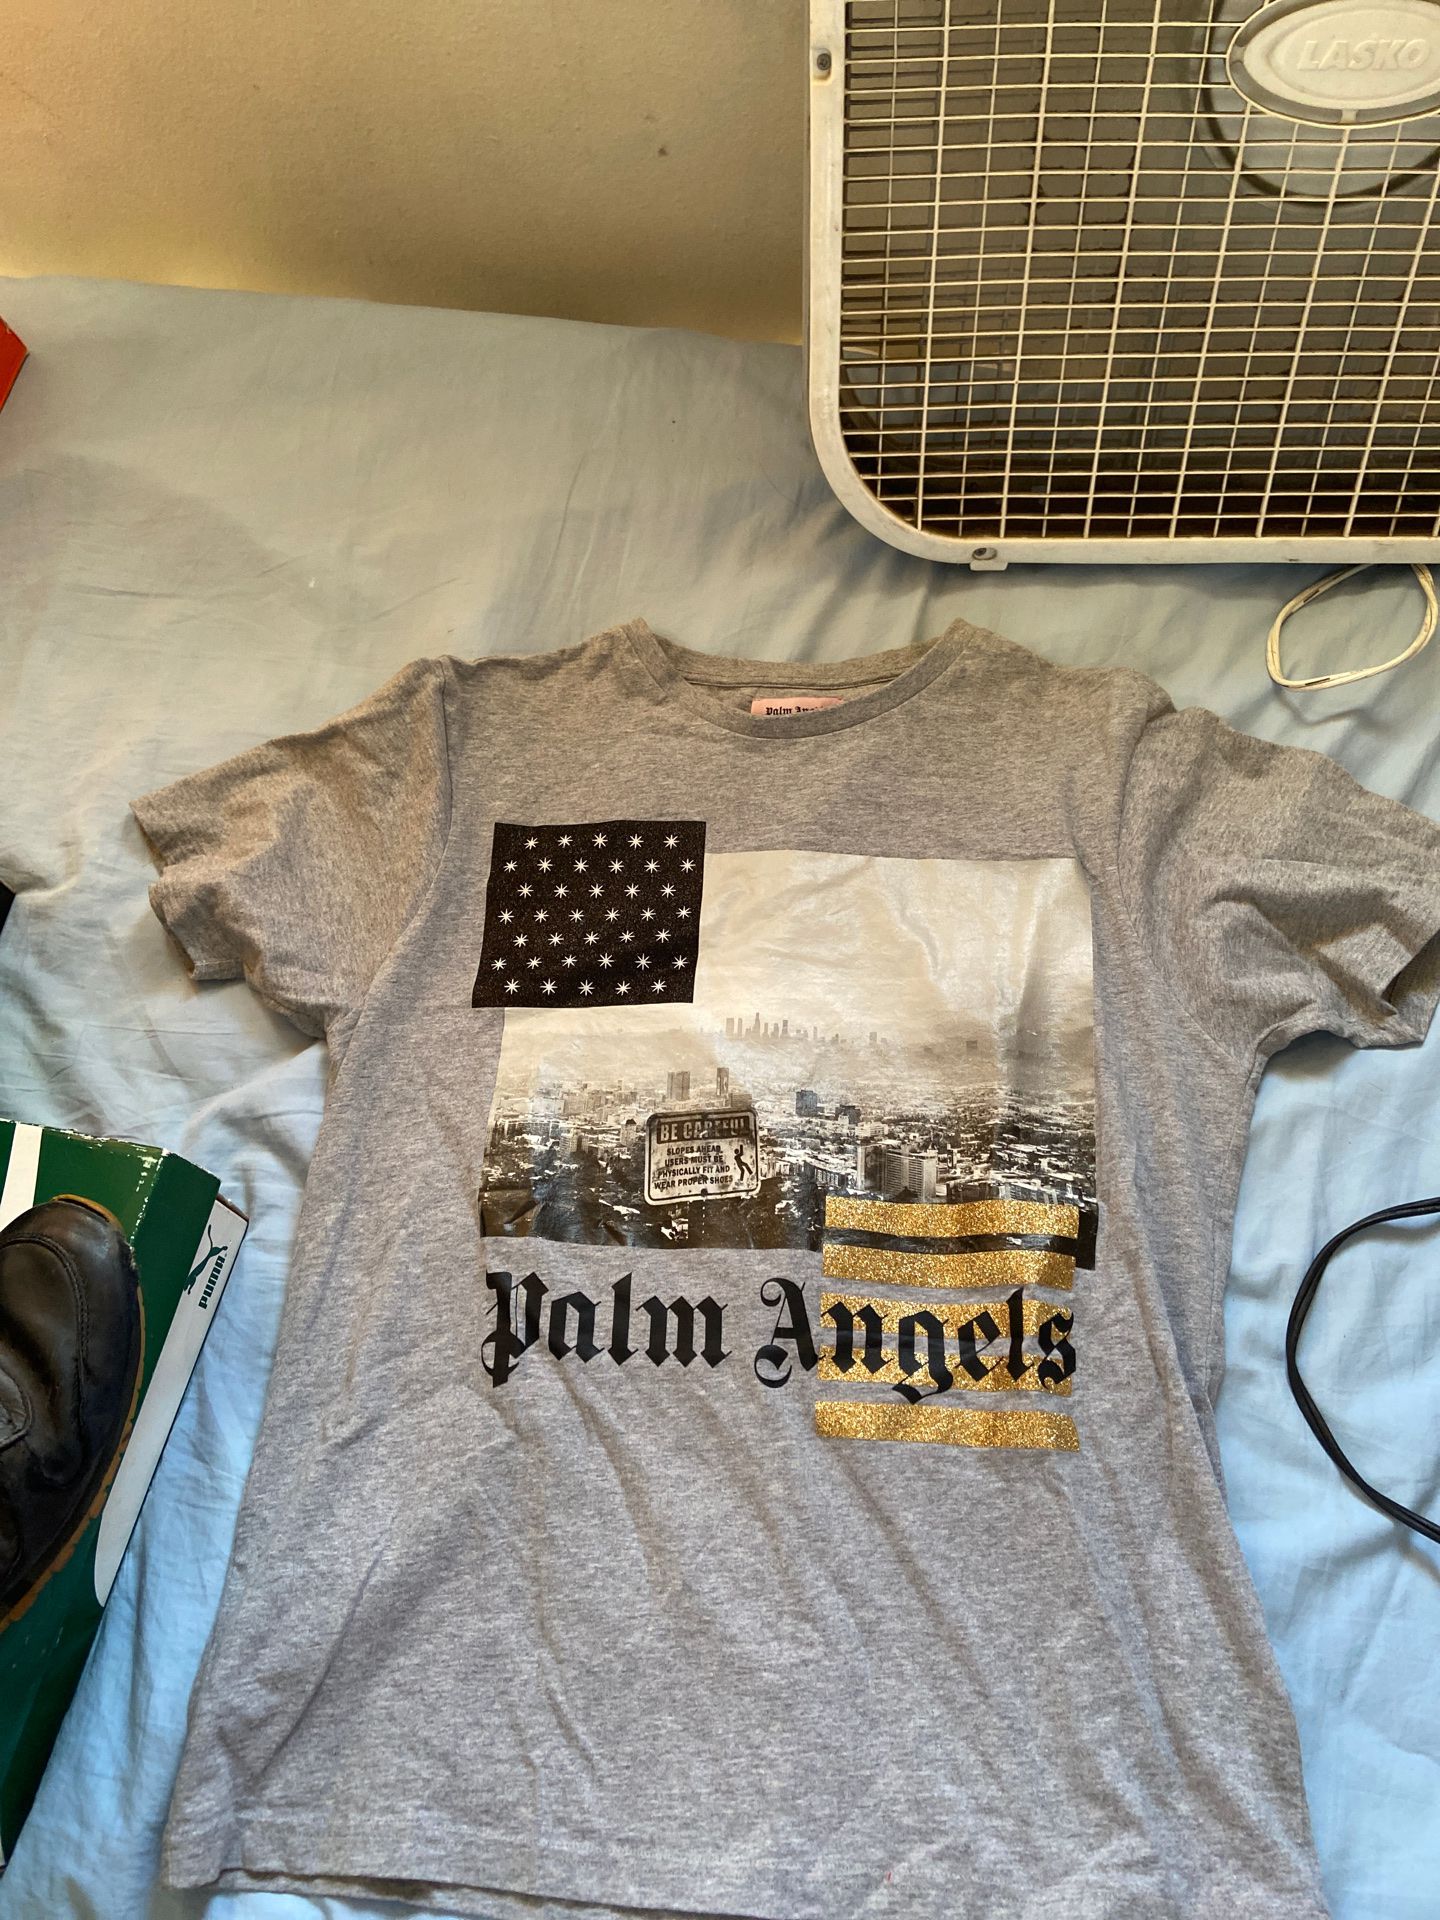 Palm angels t shirt